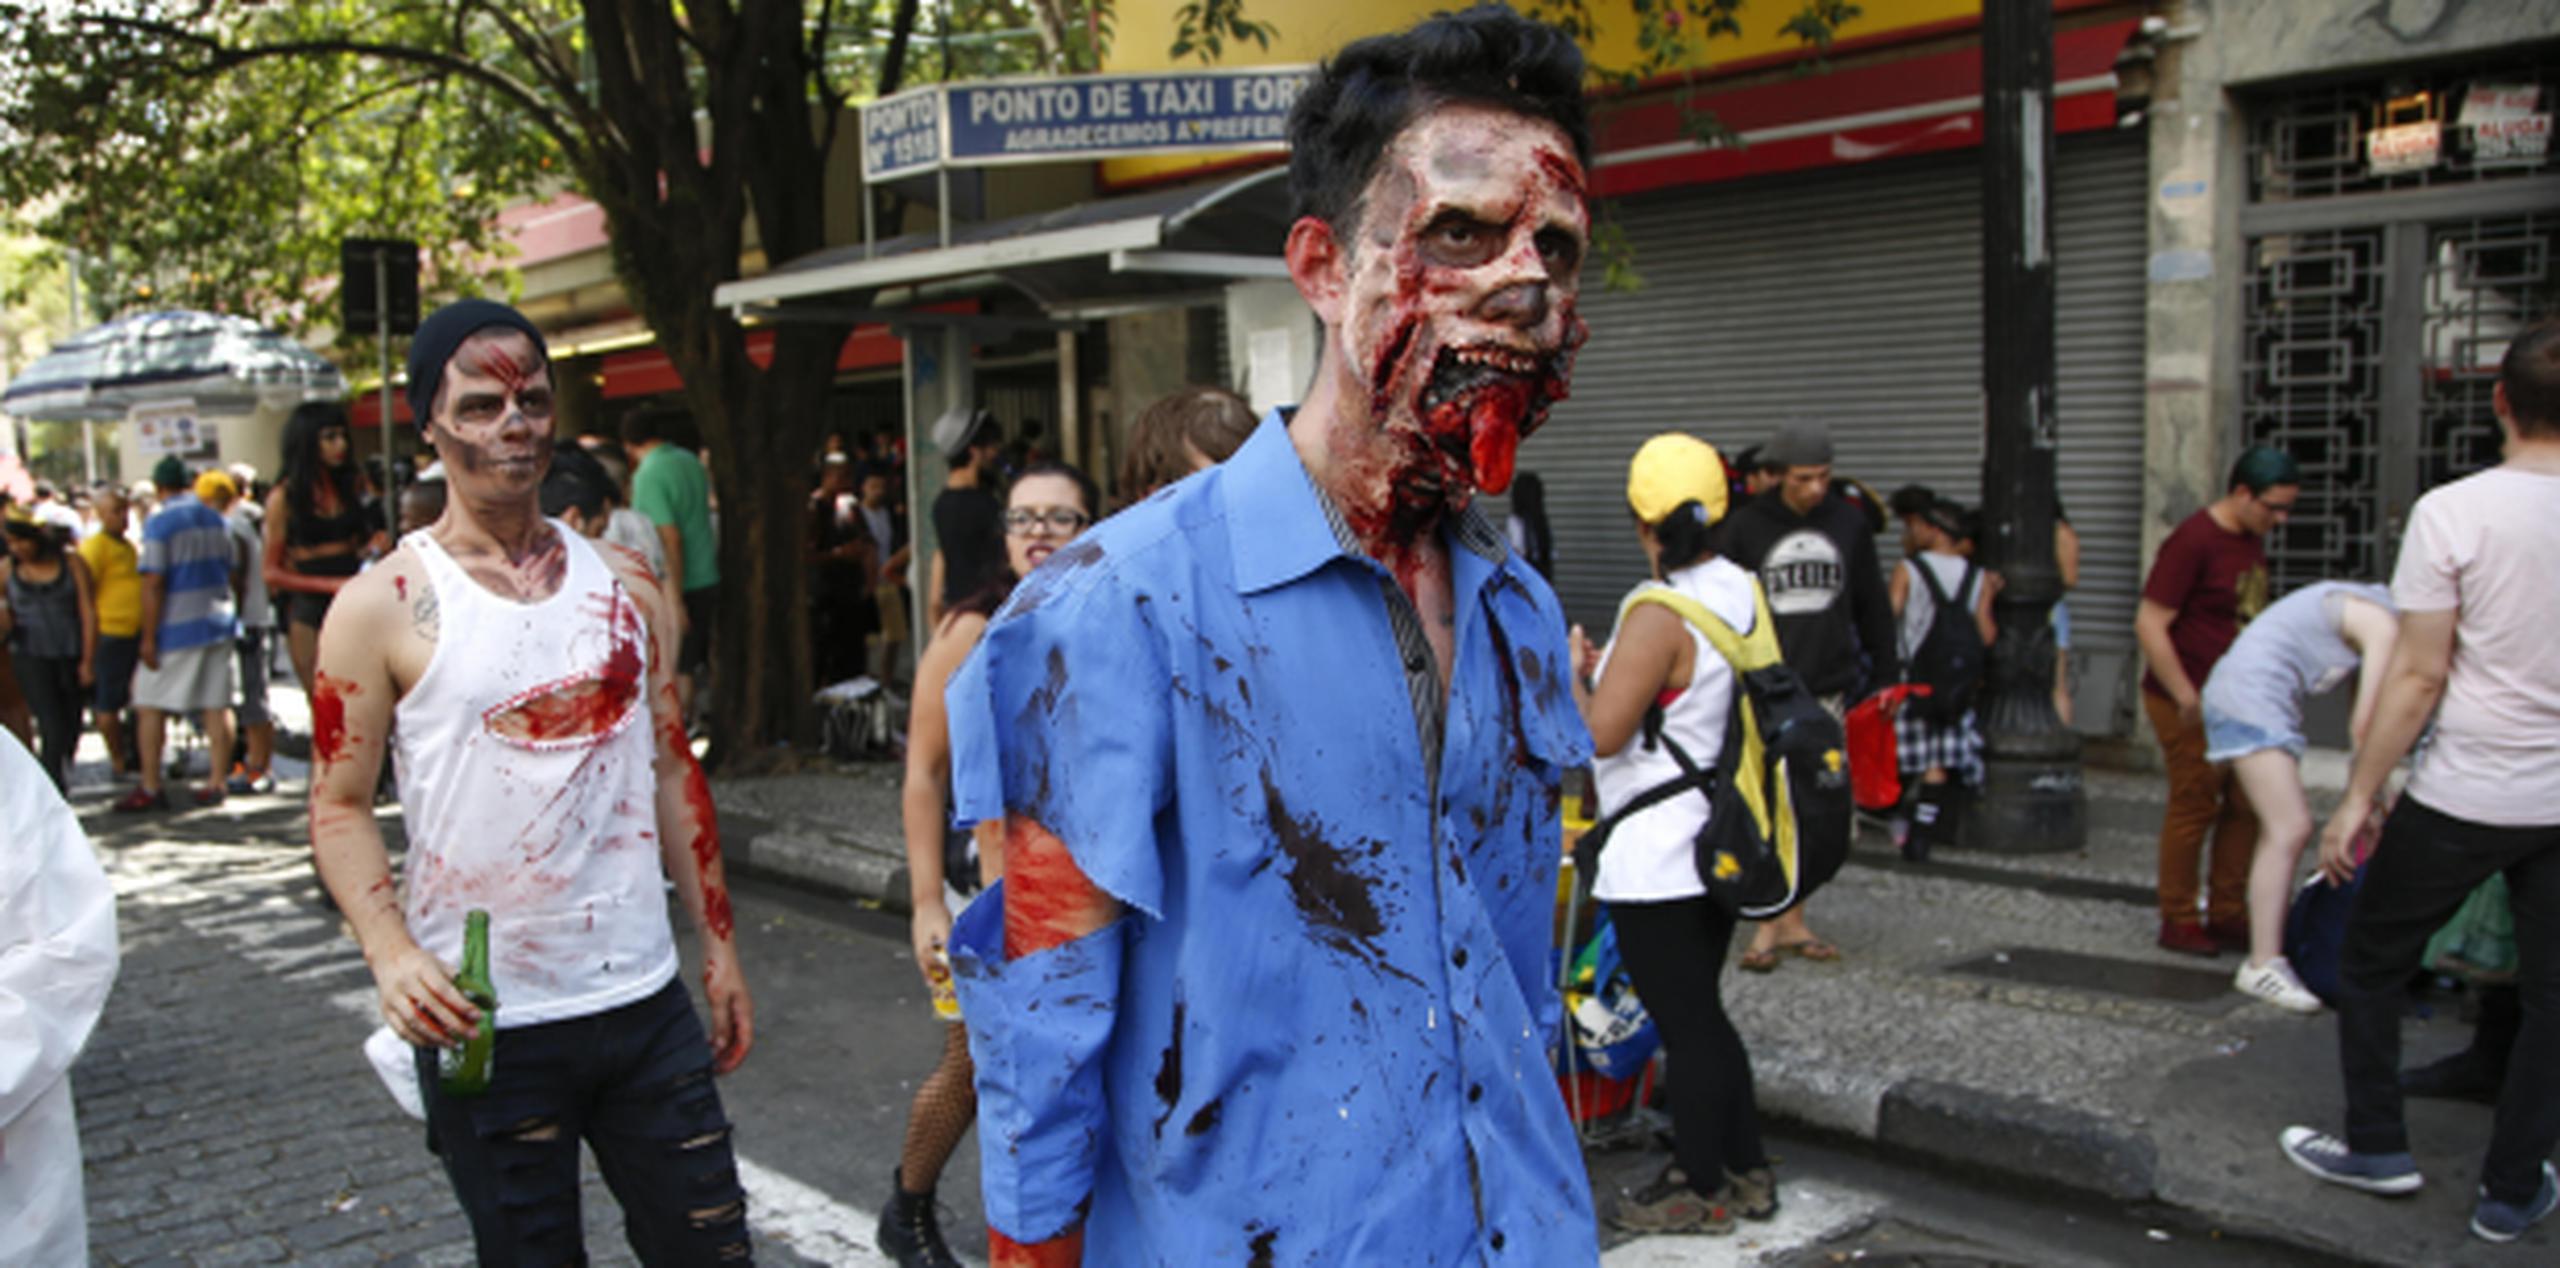 Un grupo de jóvenes usando disfraces y maquillajes alusivos a los zombies participa de la realización de la Marcha Zombie en Sao Paulo. (Agencia EFE)